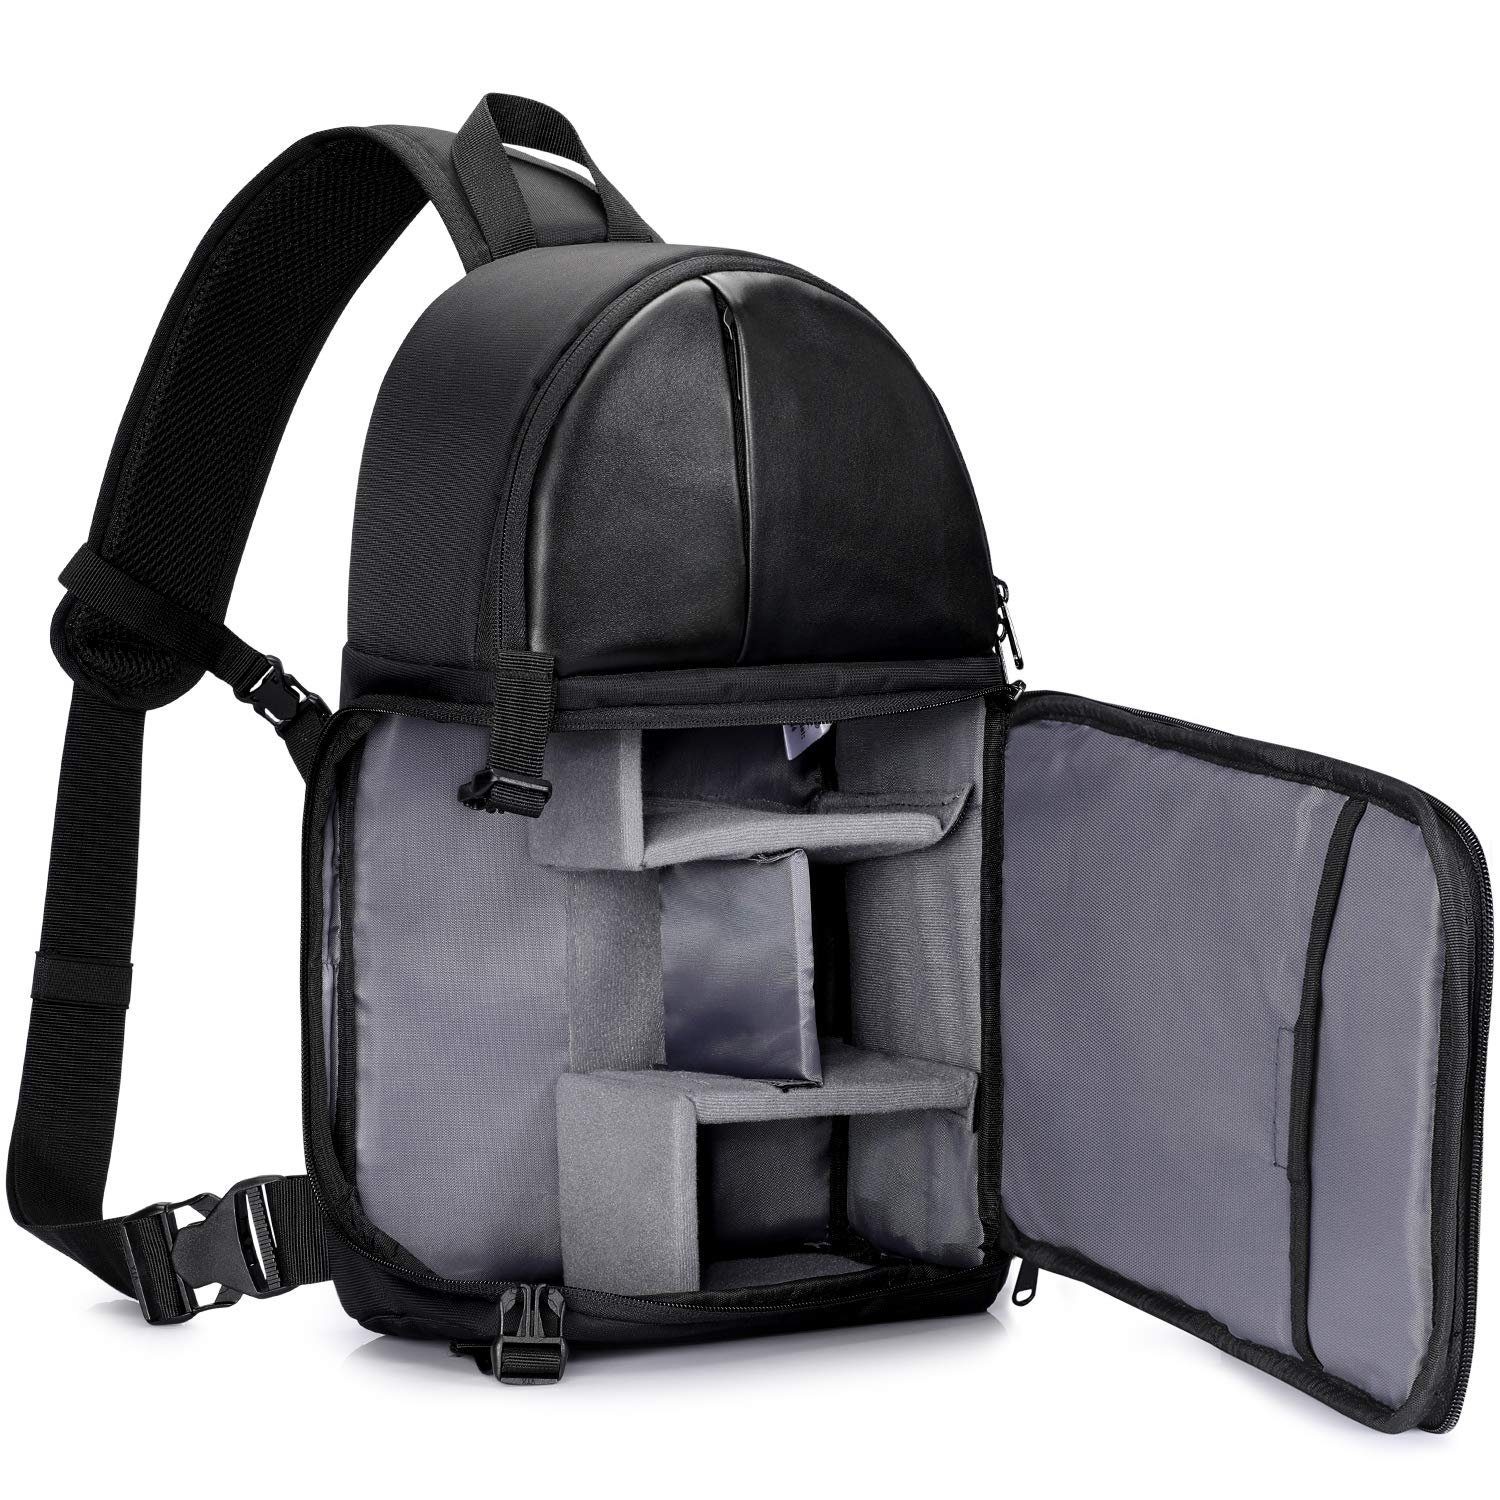 S-ZONE Kamerarucksäcke Sling Bag Wasserabweisende Kamera-Schultertasche Canvas SLR DSLR Sling Bag Kameratasche Reisetasche für Spiegelreflexkameras 